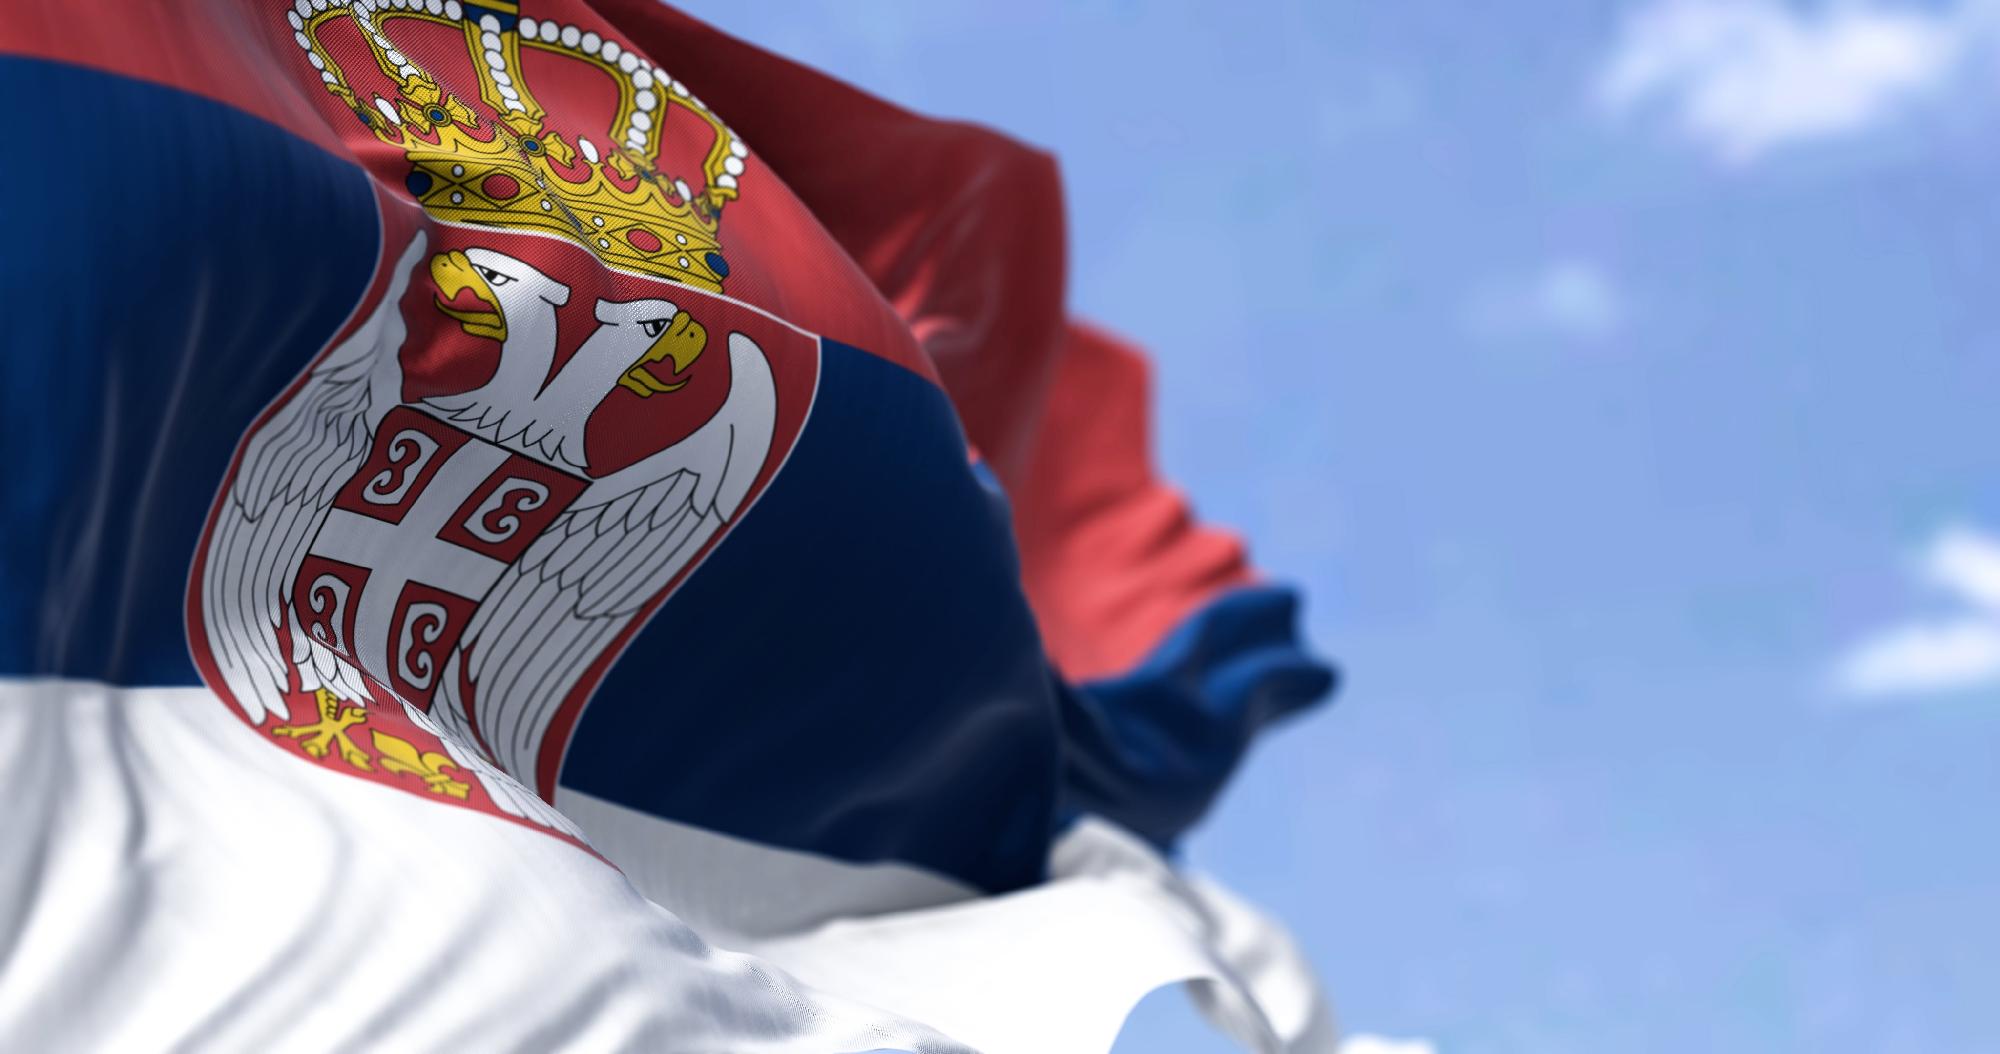 A Szerbia az erőszak ellen koalíció a választás elcsalását sejti